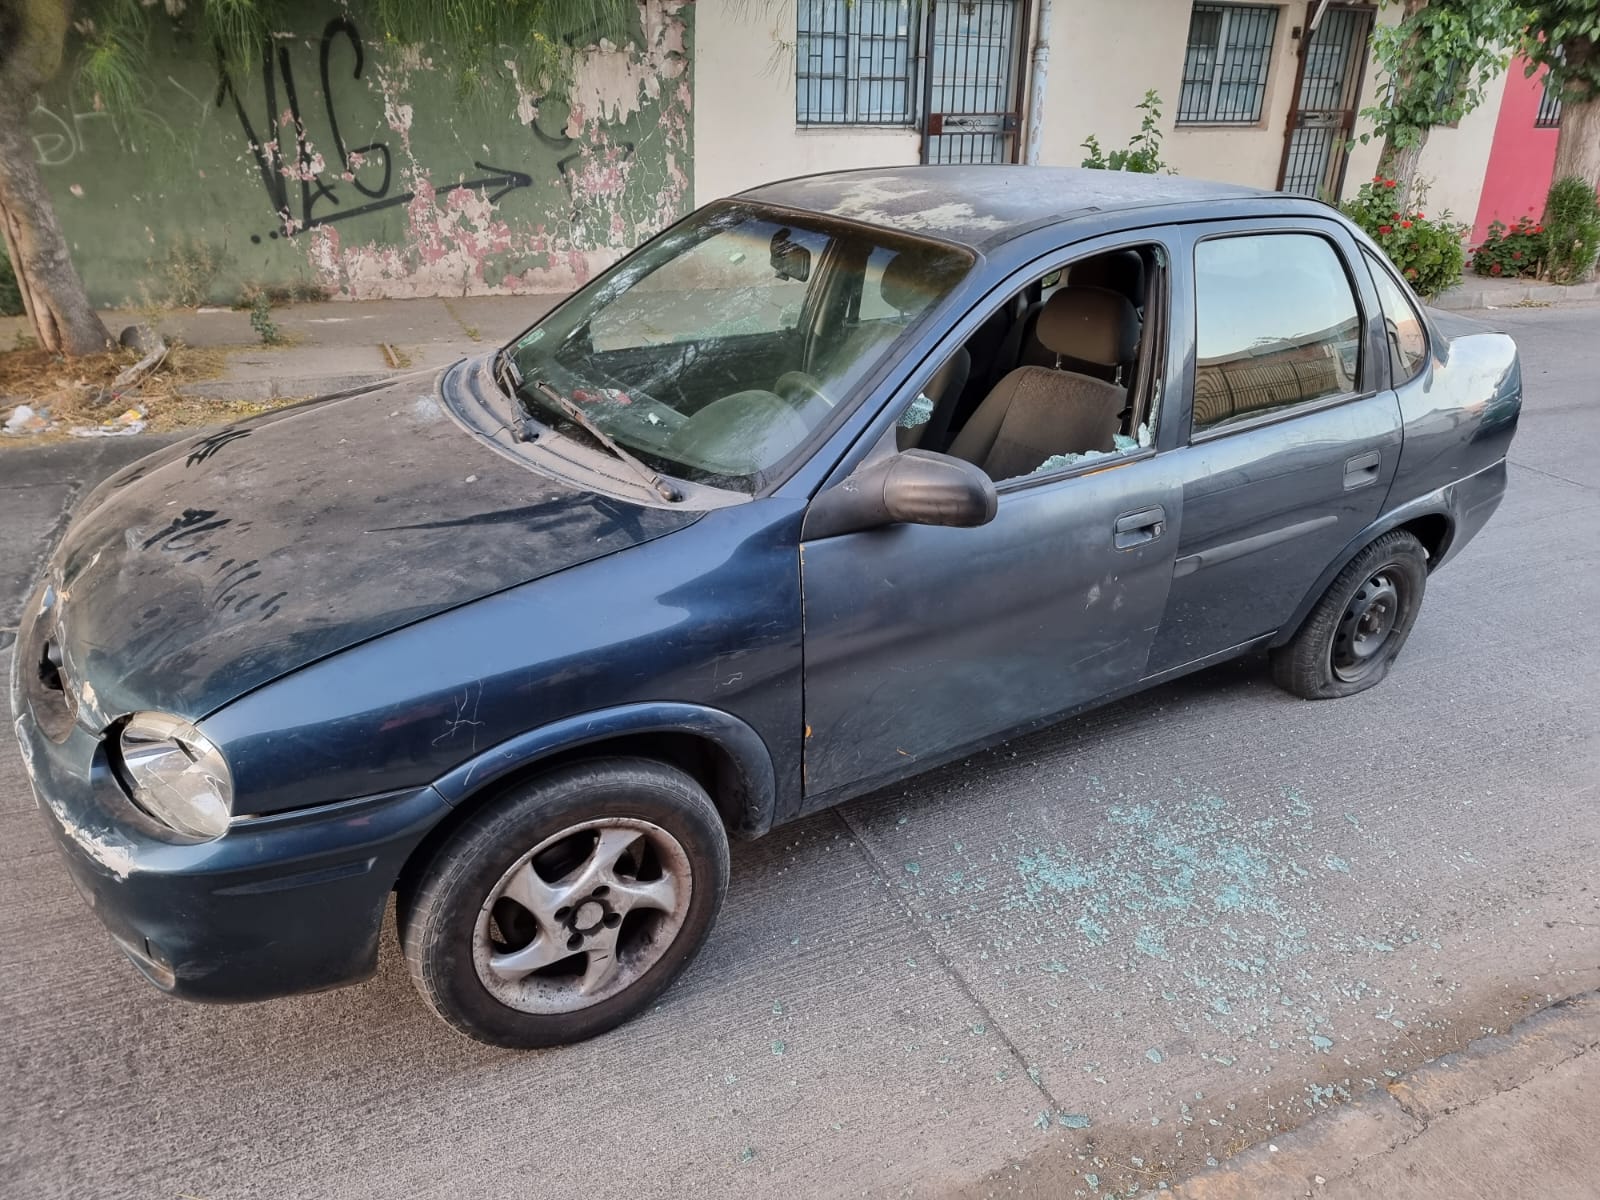 LOS ANDES: Delincuentes armados asaltan violentamente a dueño de Club Aconcagua